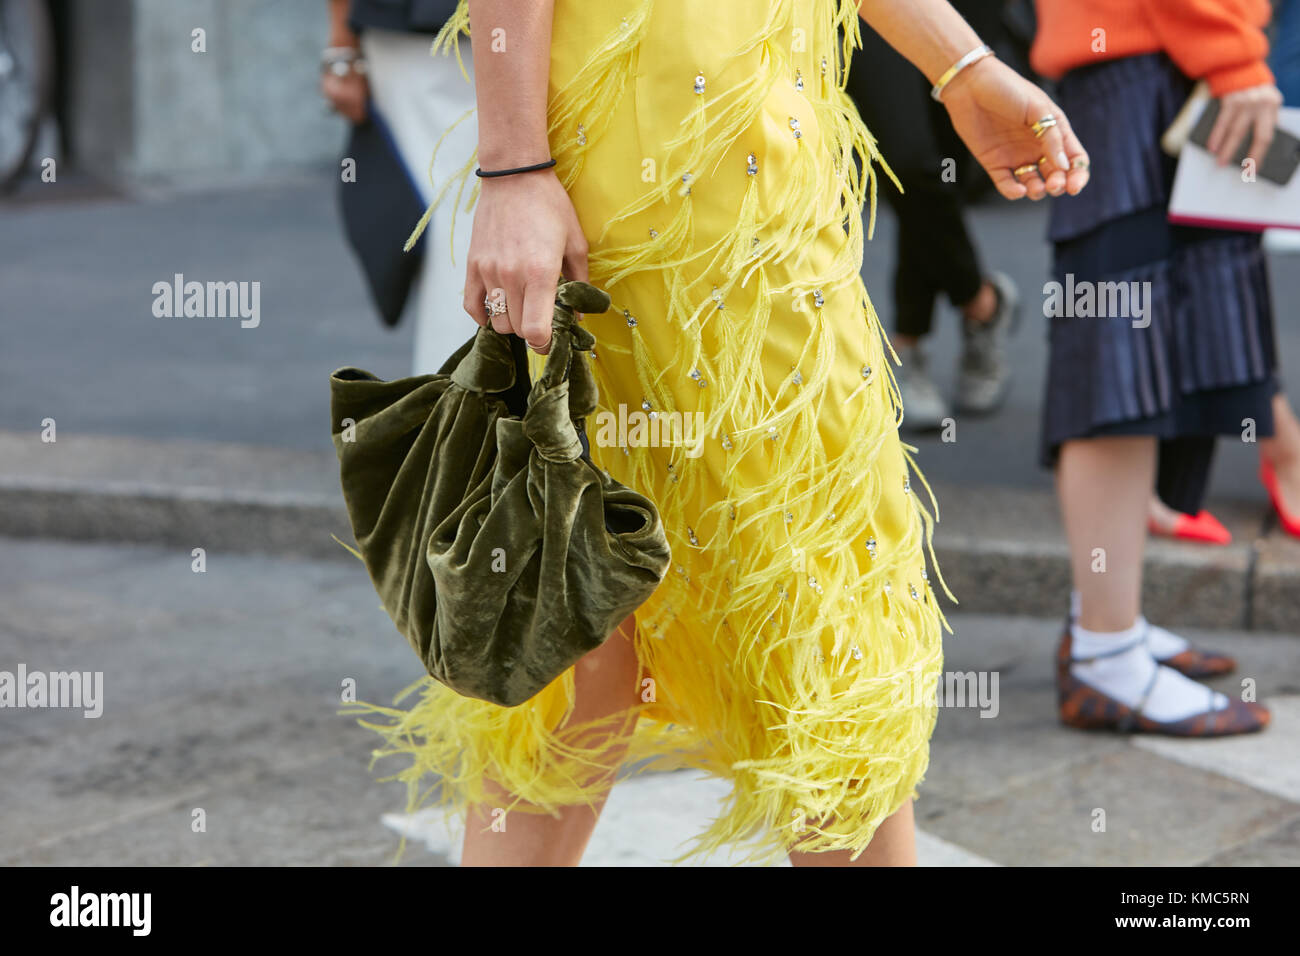 Mailand - 23. September: Frau gehen mit gelben Kleid mit Federn Fransen und grün Samtbeutel vor Antonio marras fashion show, Mailand fashion Wee Stockfoto